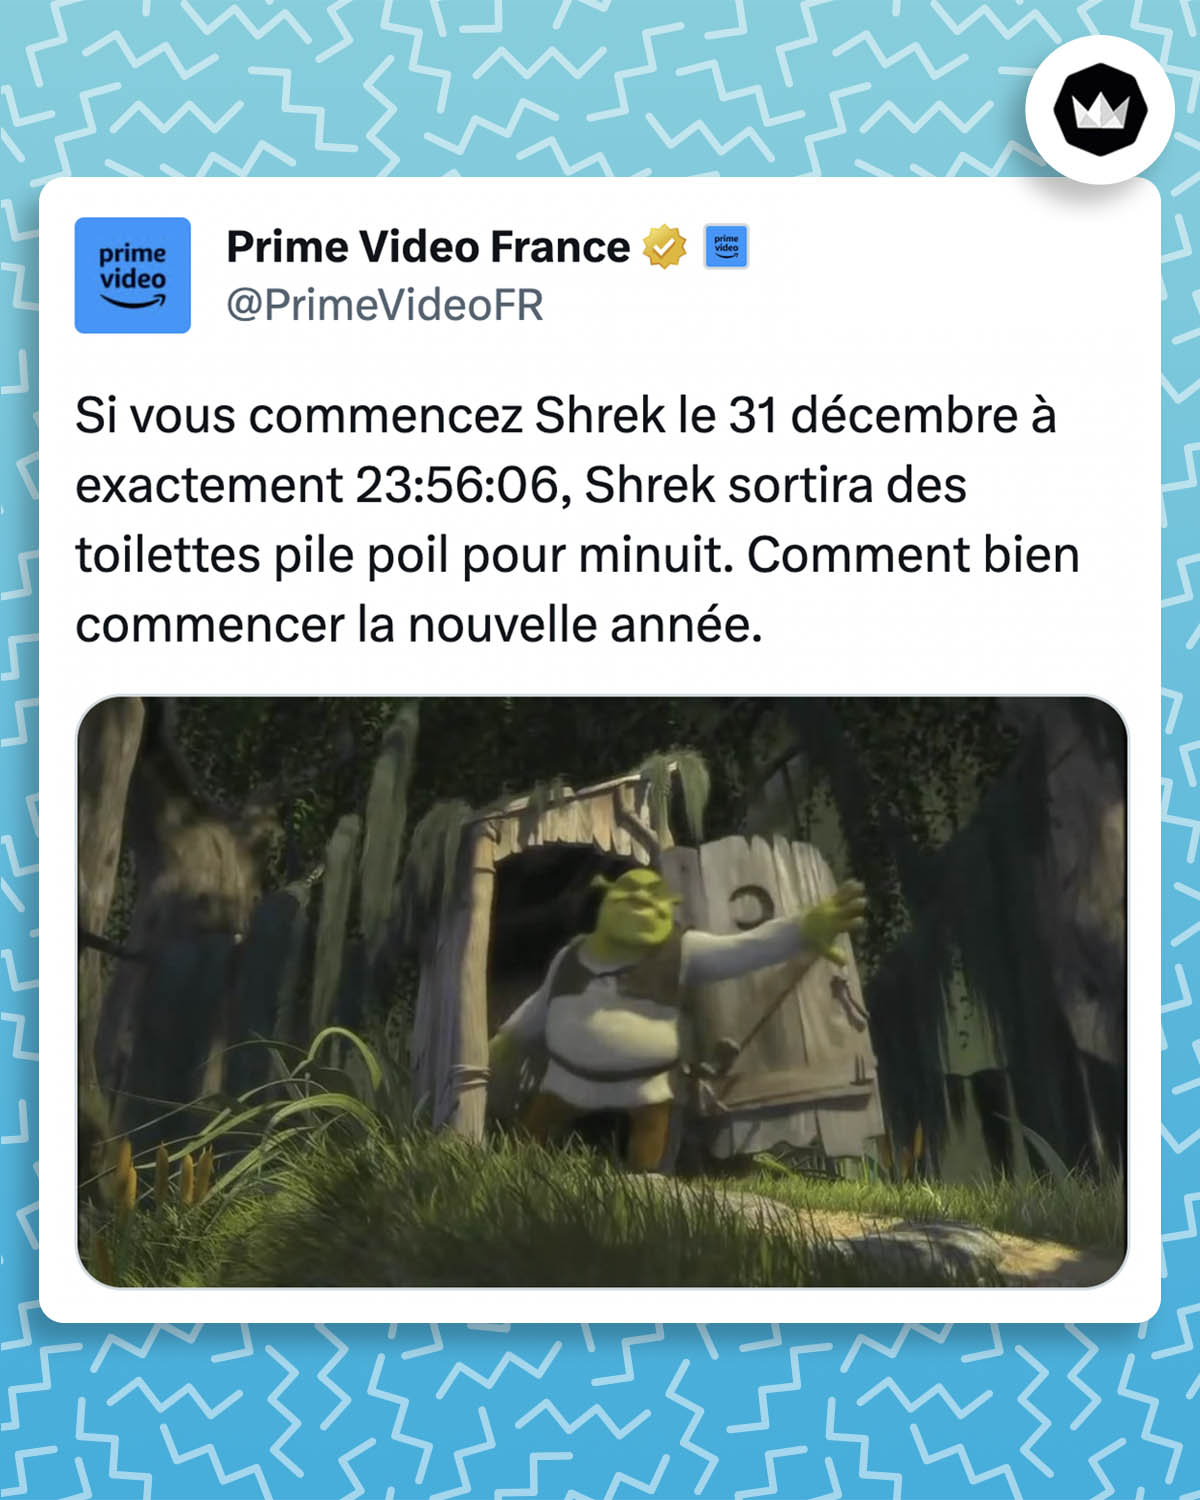 tweet de PrimeVideoFR : Si vous commencez Shrek le 31 décembre à exactement 23:56:06, Shrek sortira des toilettes pile poil pour minuit. Comment bien commencer la nouvelle année.